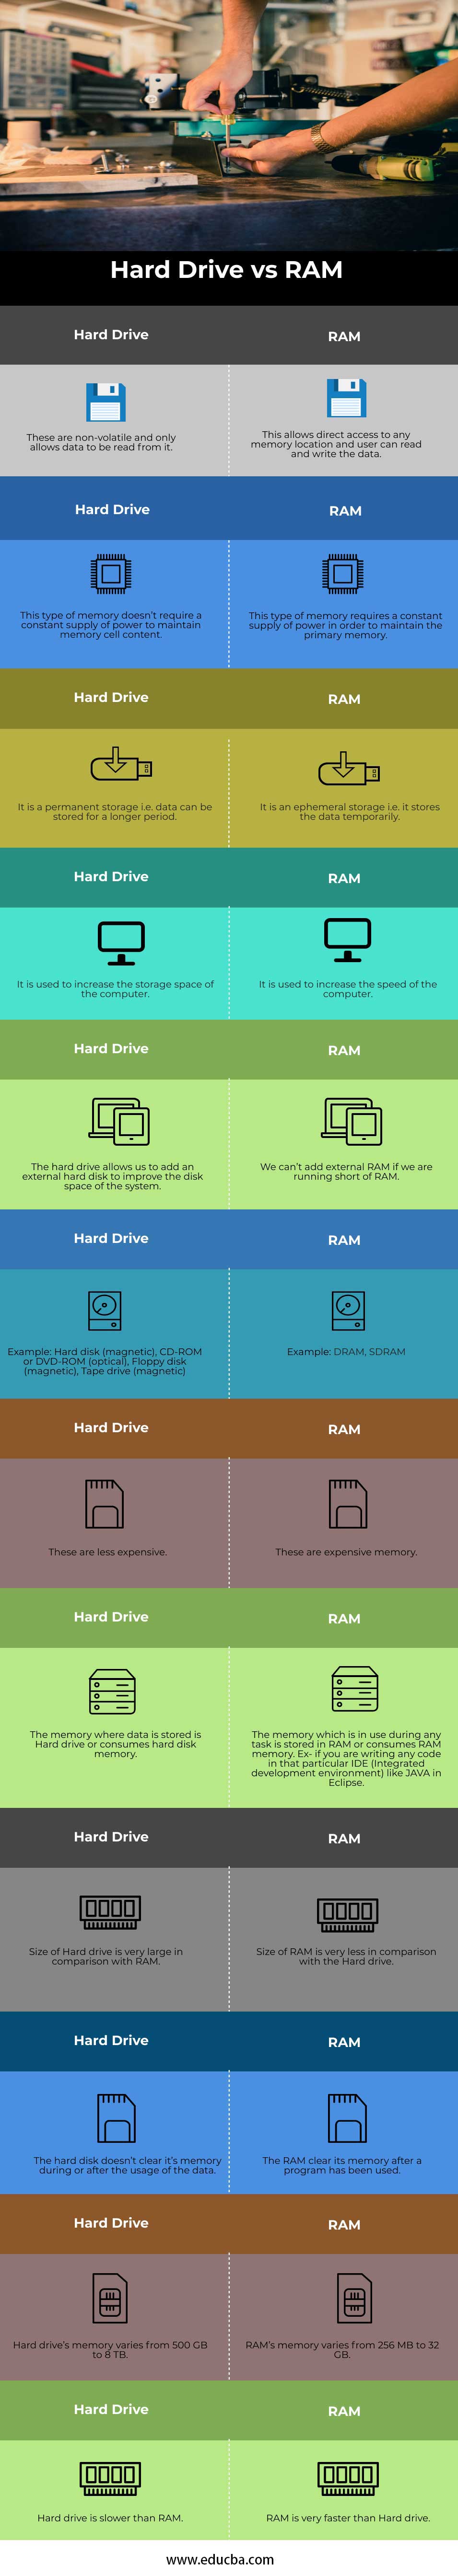 Hard-drive-vs-RAM-info